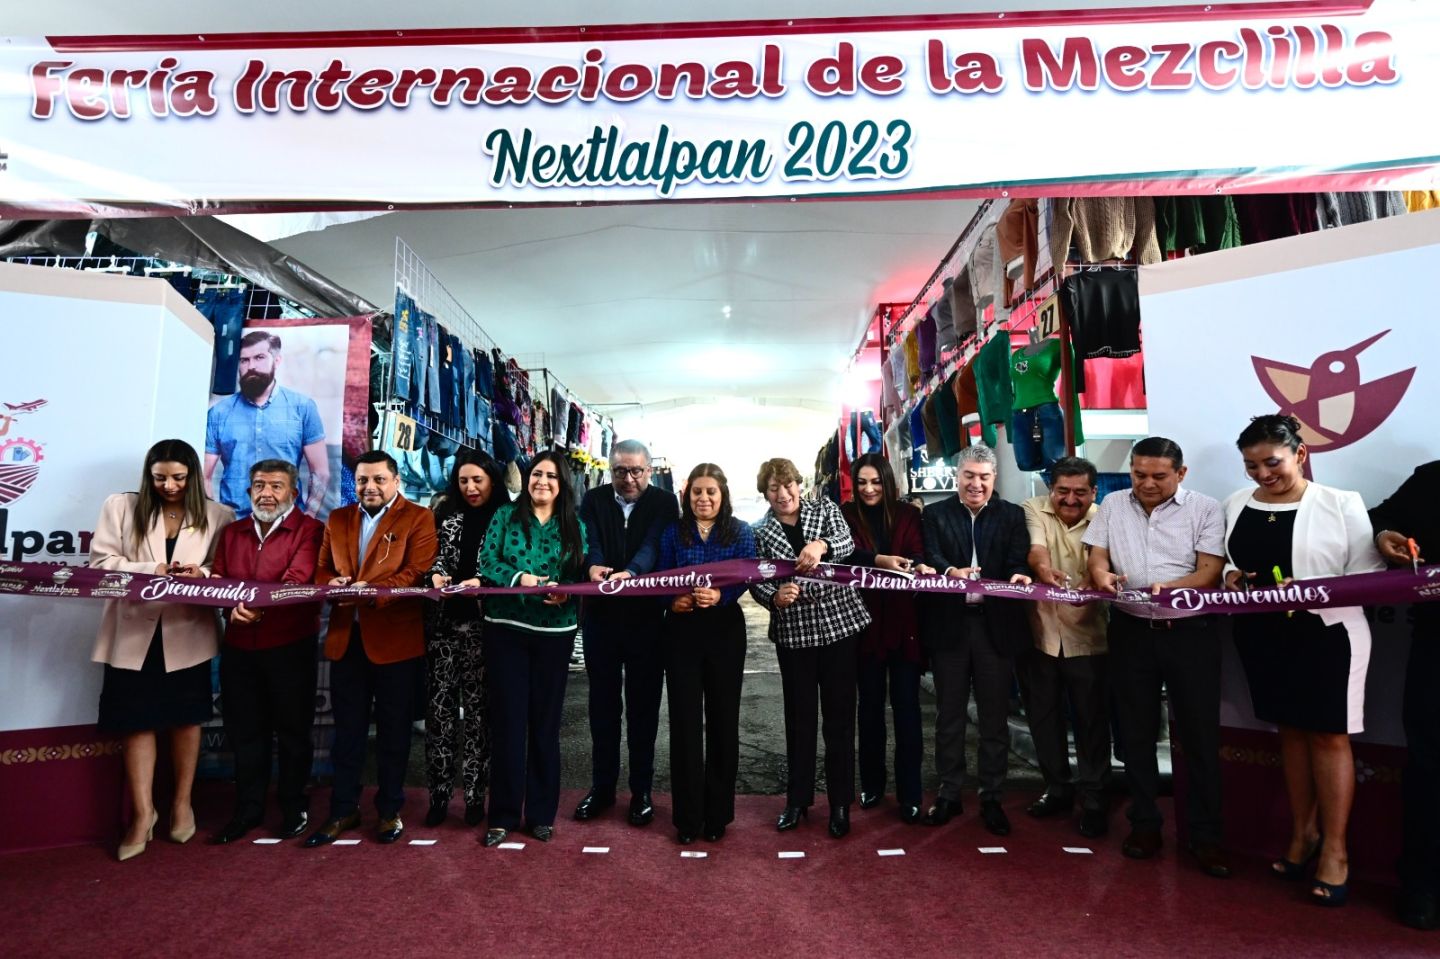 Inaugura Gobernadora Delfina Gómez la 25 Edición de la Feria Internacional de la Mezclilla en Nextlalpan, impulsa la economía del municipio